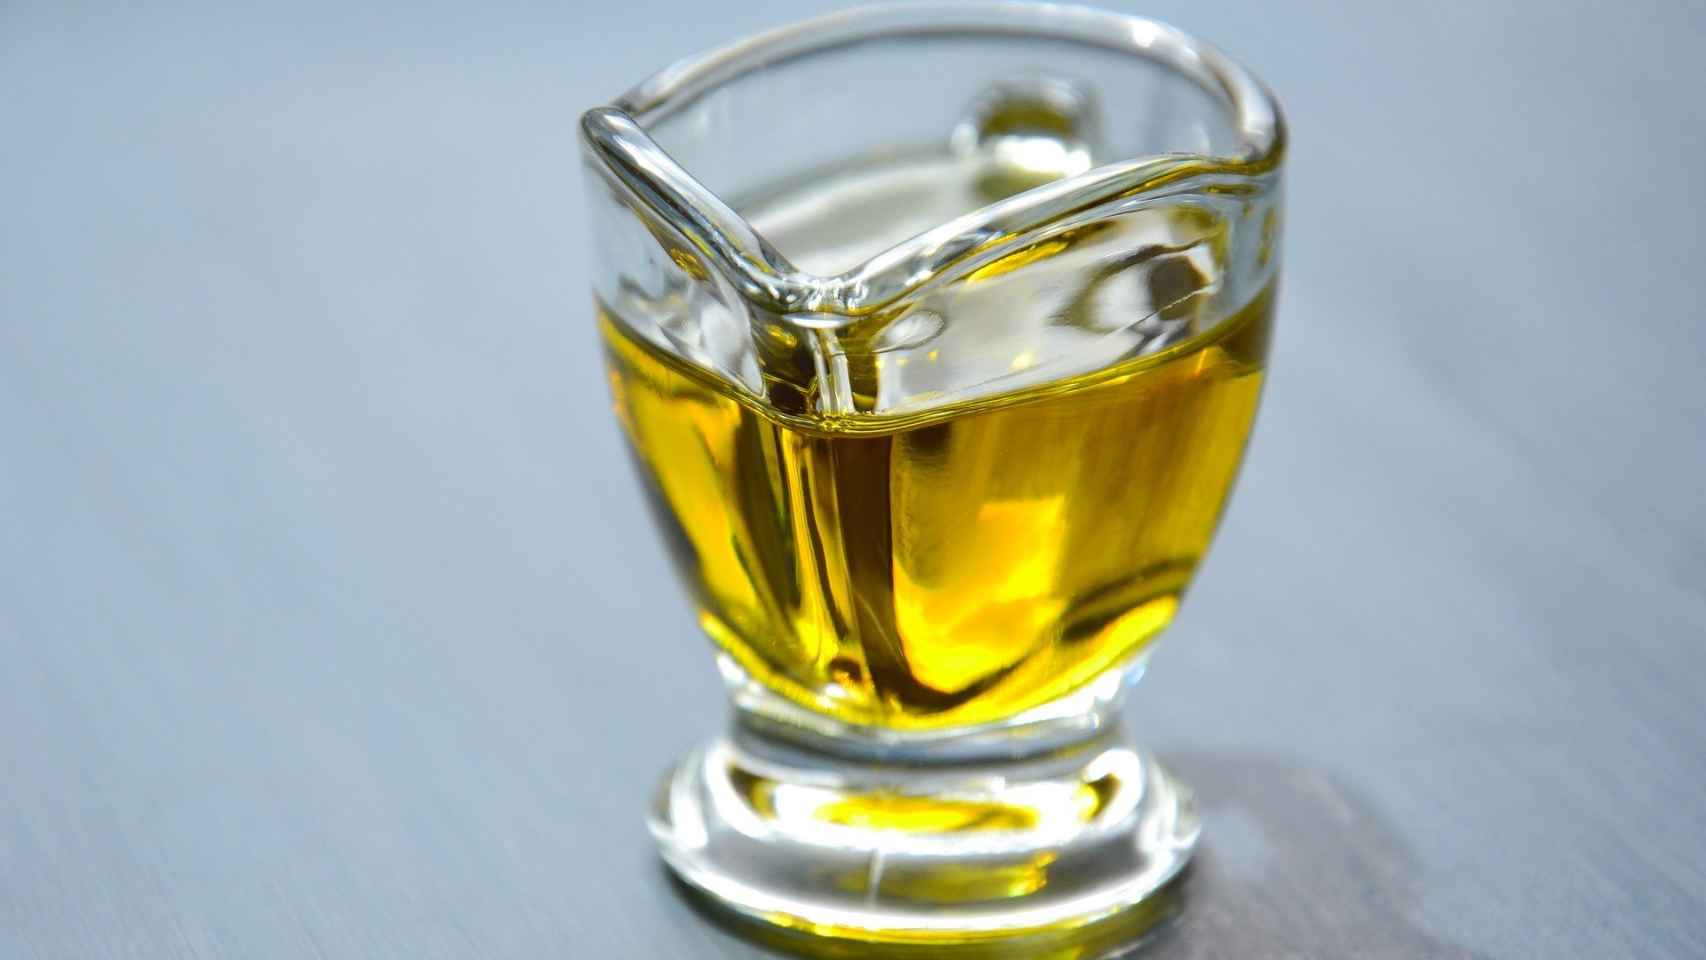 Un vasito con aceite de oliva.